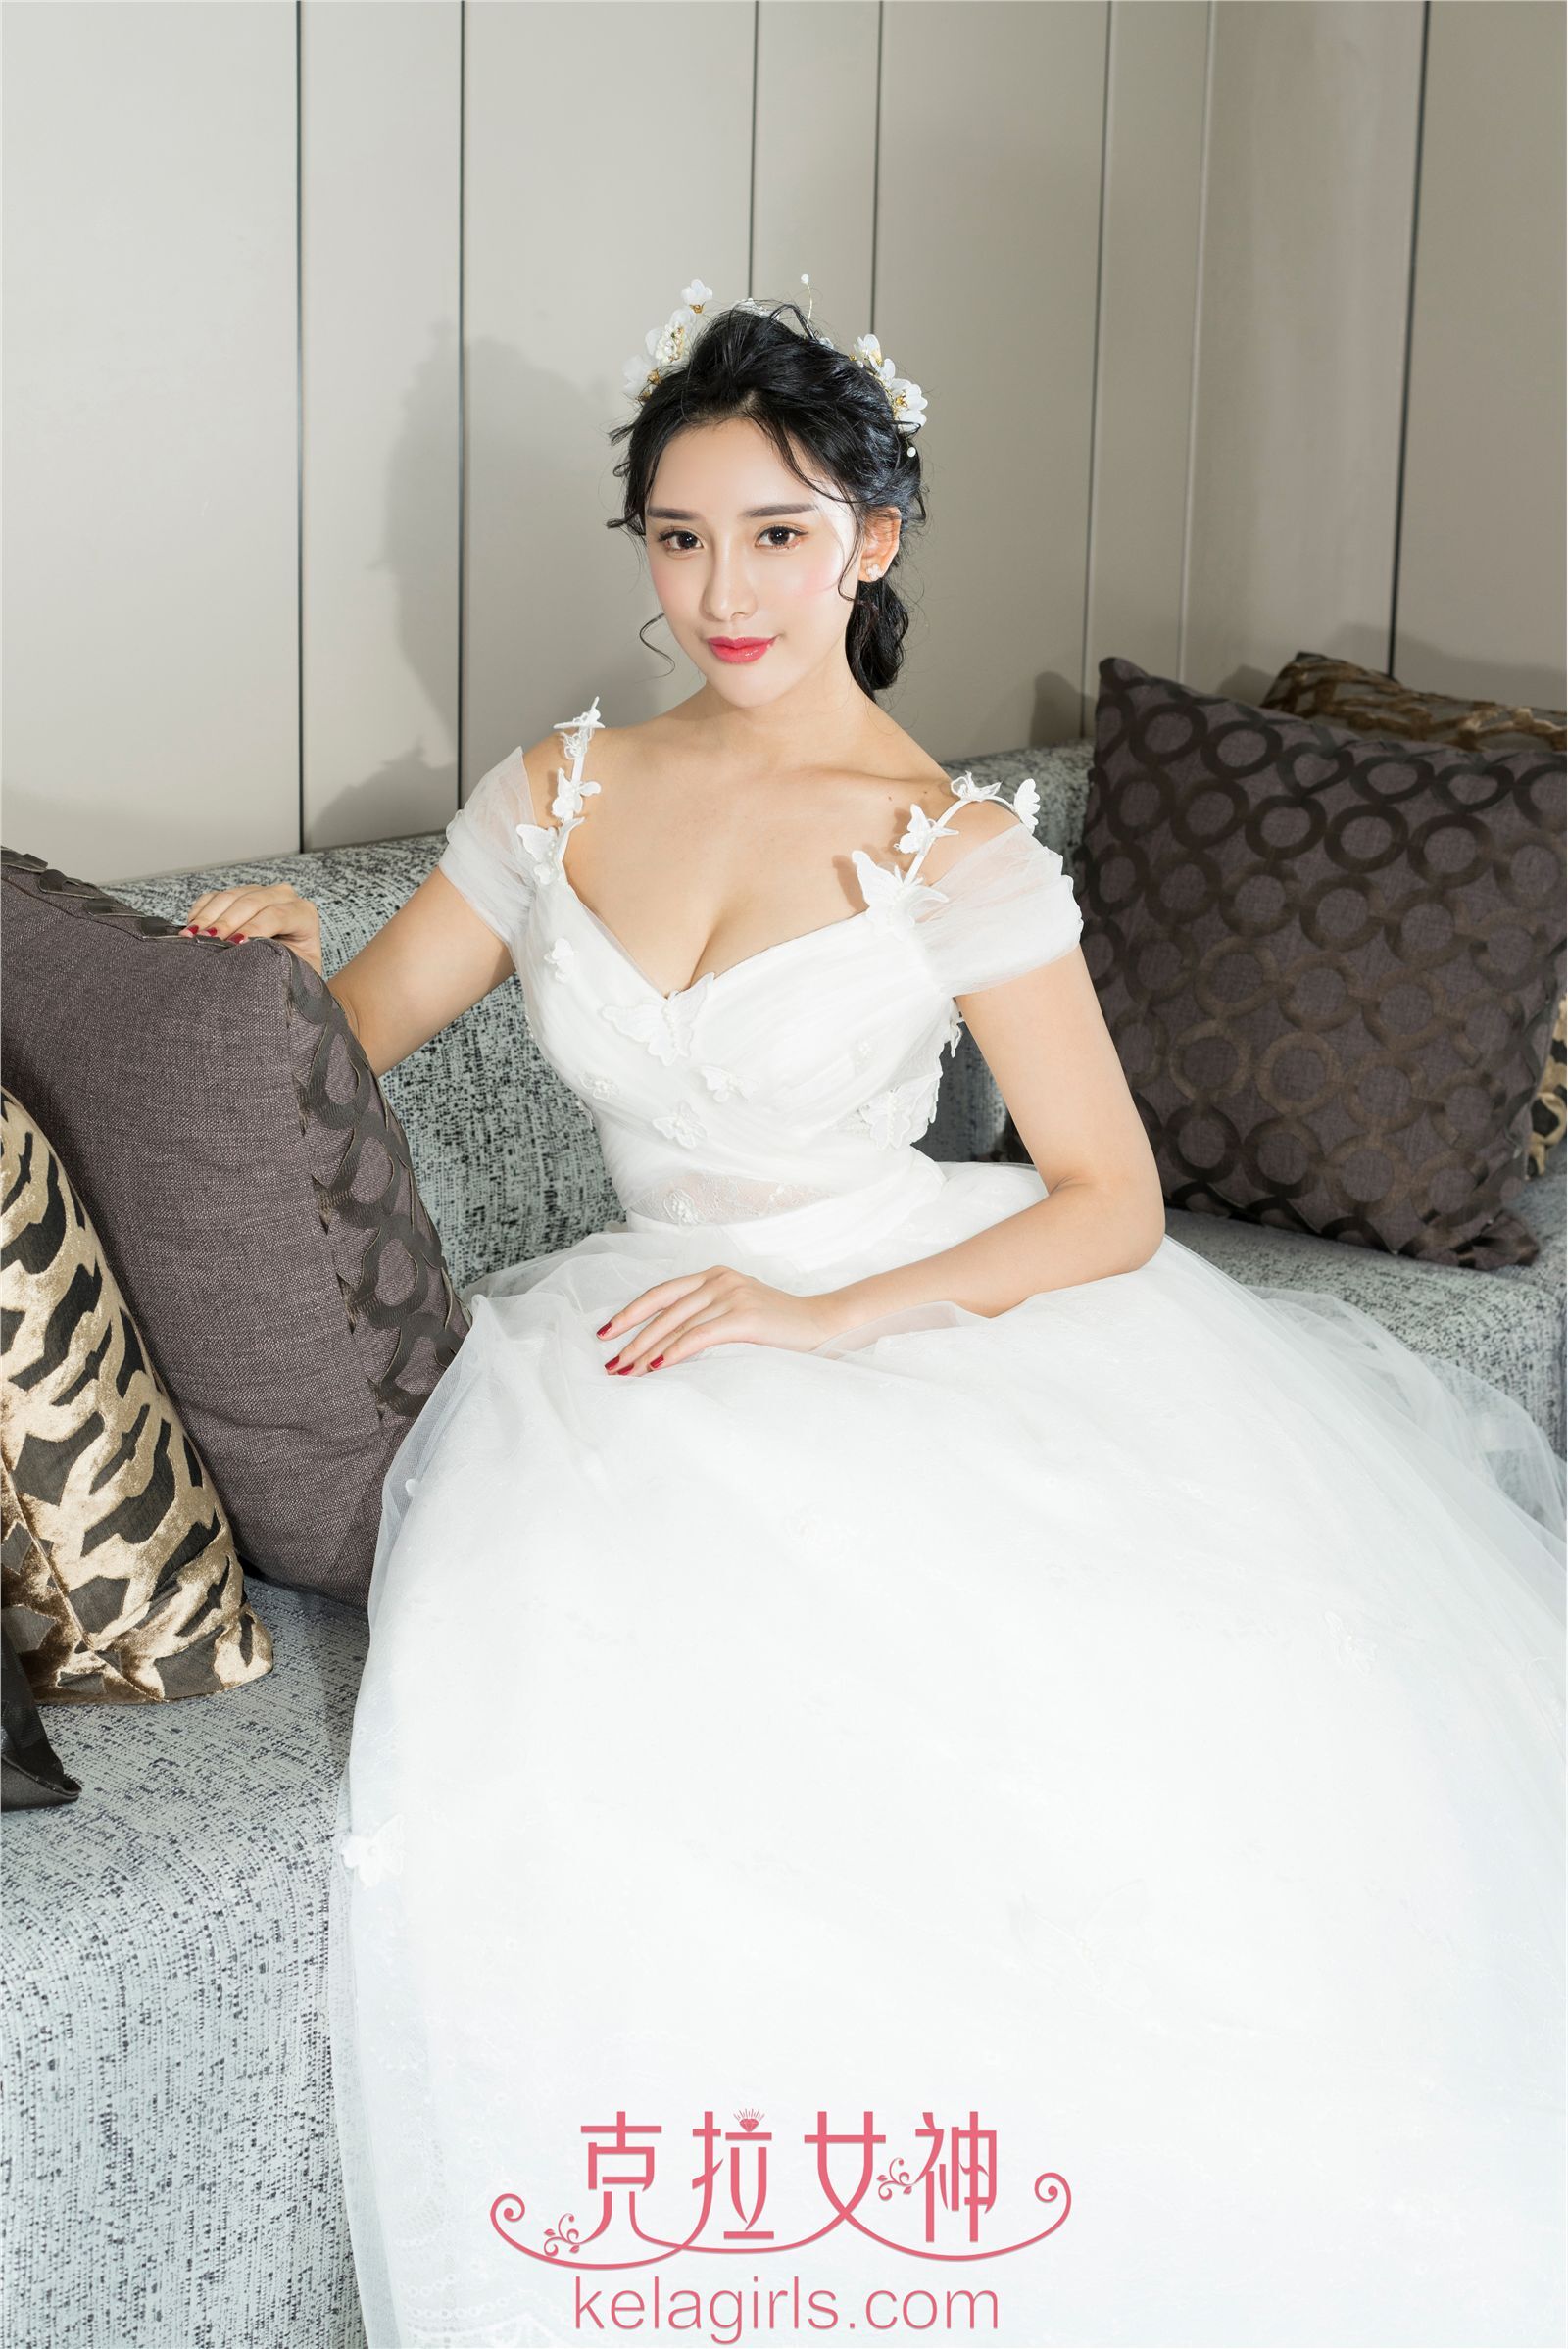 [Kela girls] Kela goddess 2017-04-26 Xiao Xi, you are going to marry me today